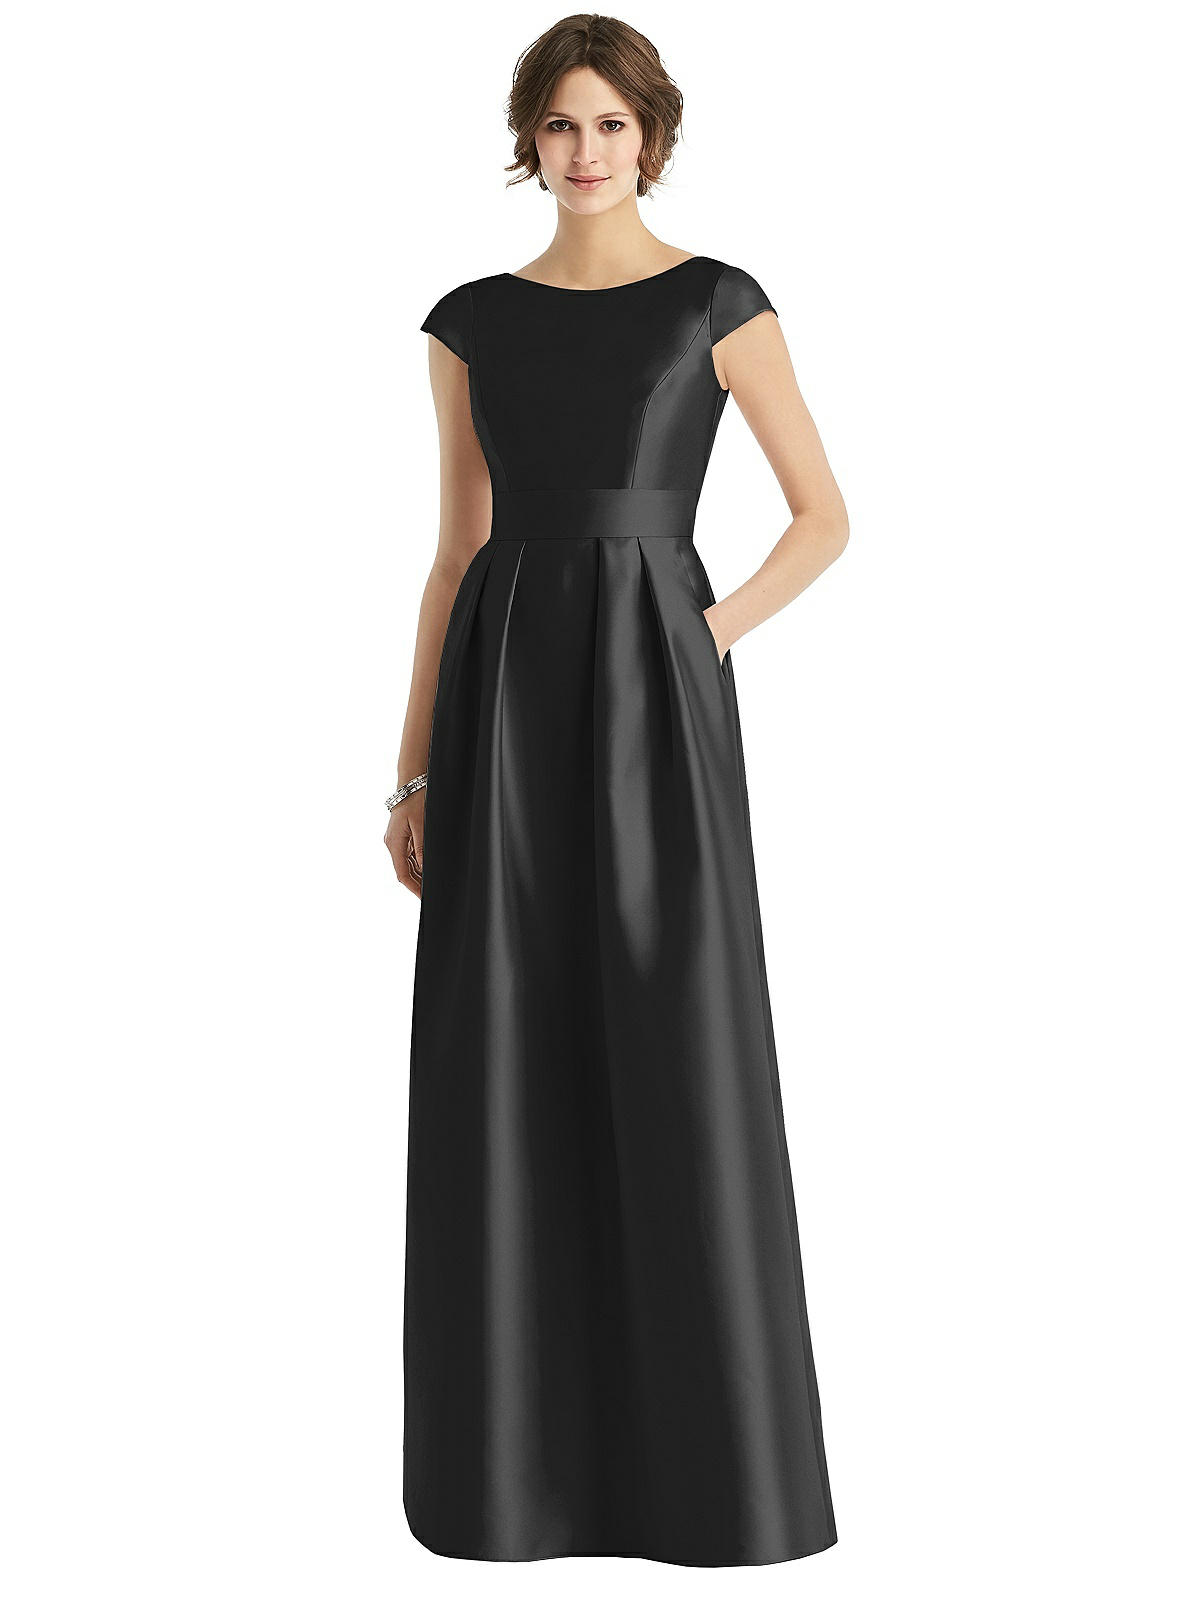 Vintage Evening Dresses Cap Sleeve Pleated Skirt Dress with Pockets  AT vintagedancer.com